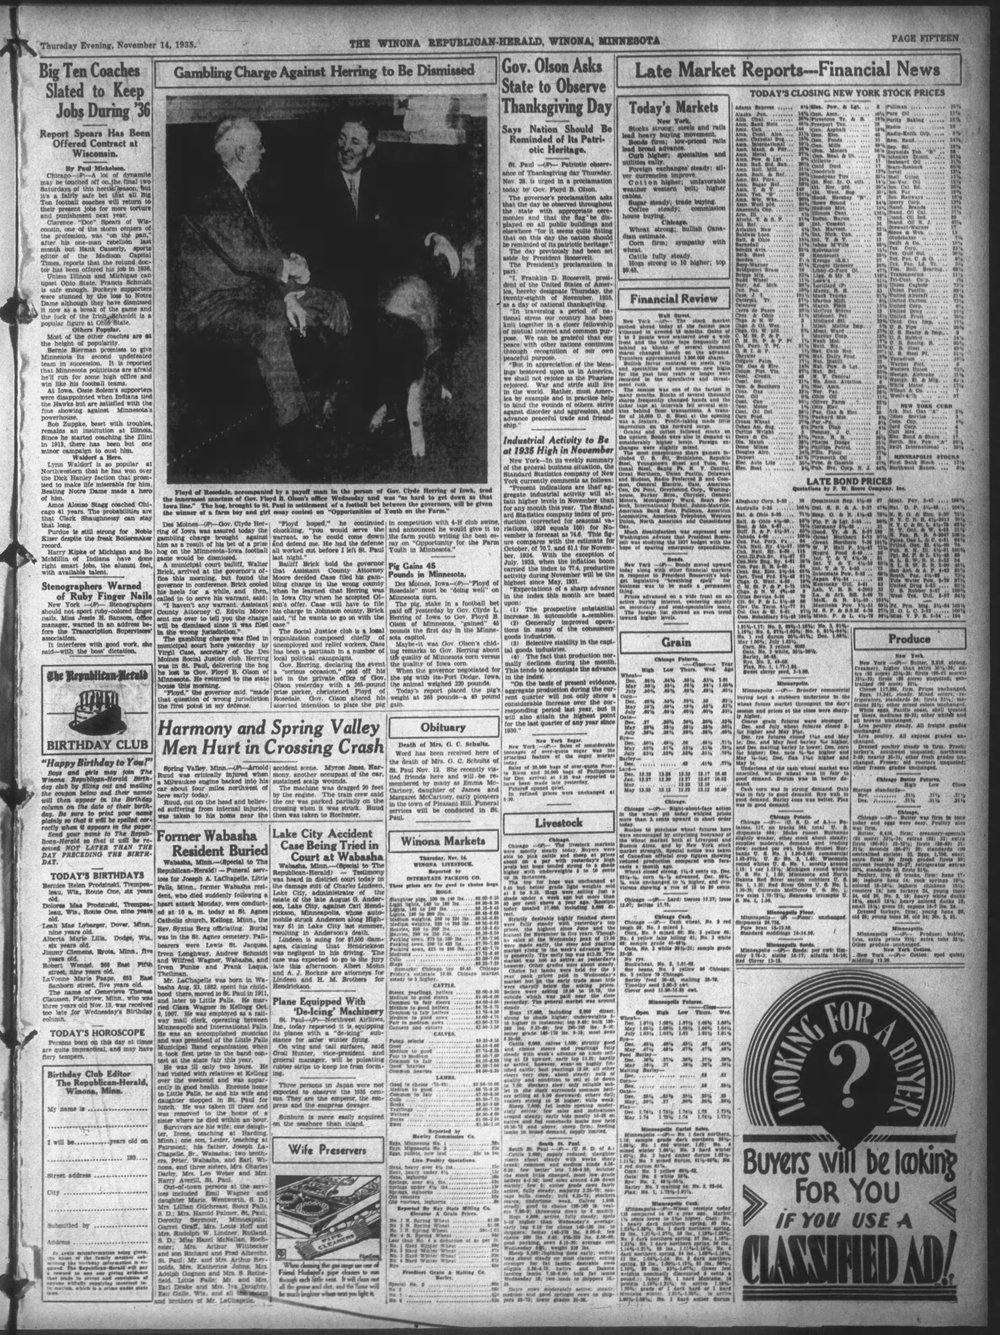 The_Winona_Daily_News_Thu__Nov_14__1935_.jpg